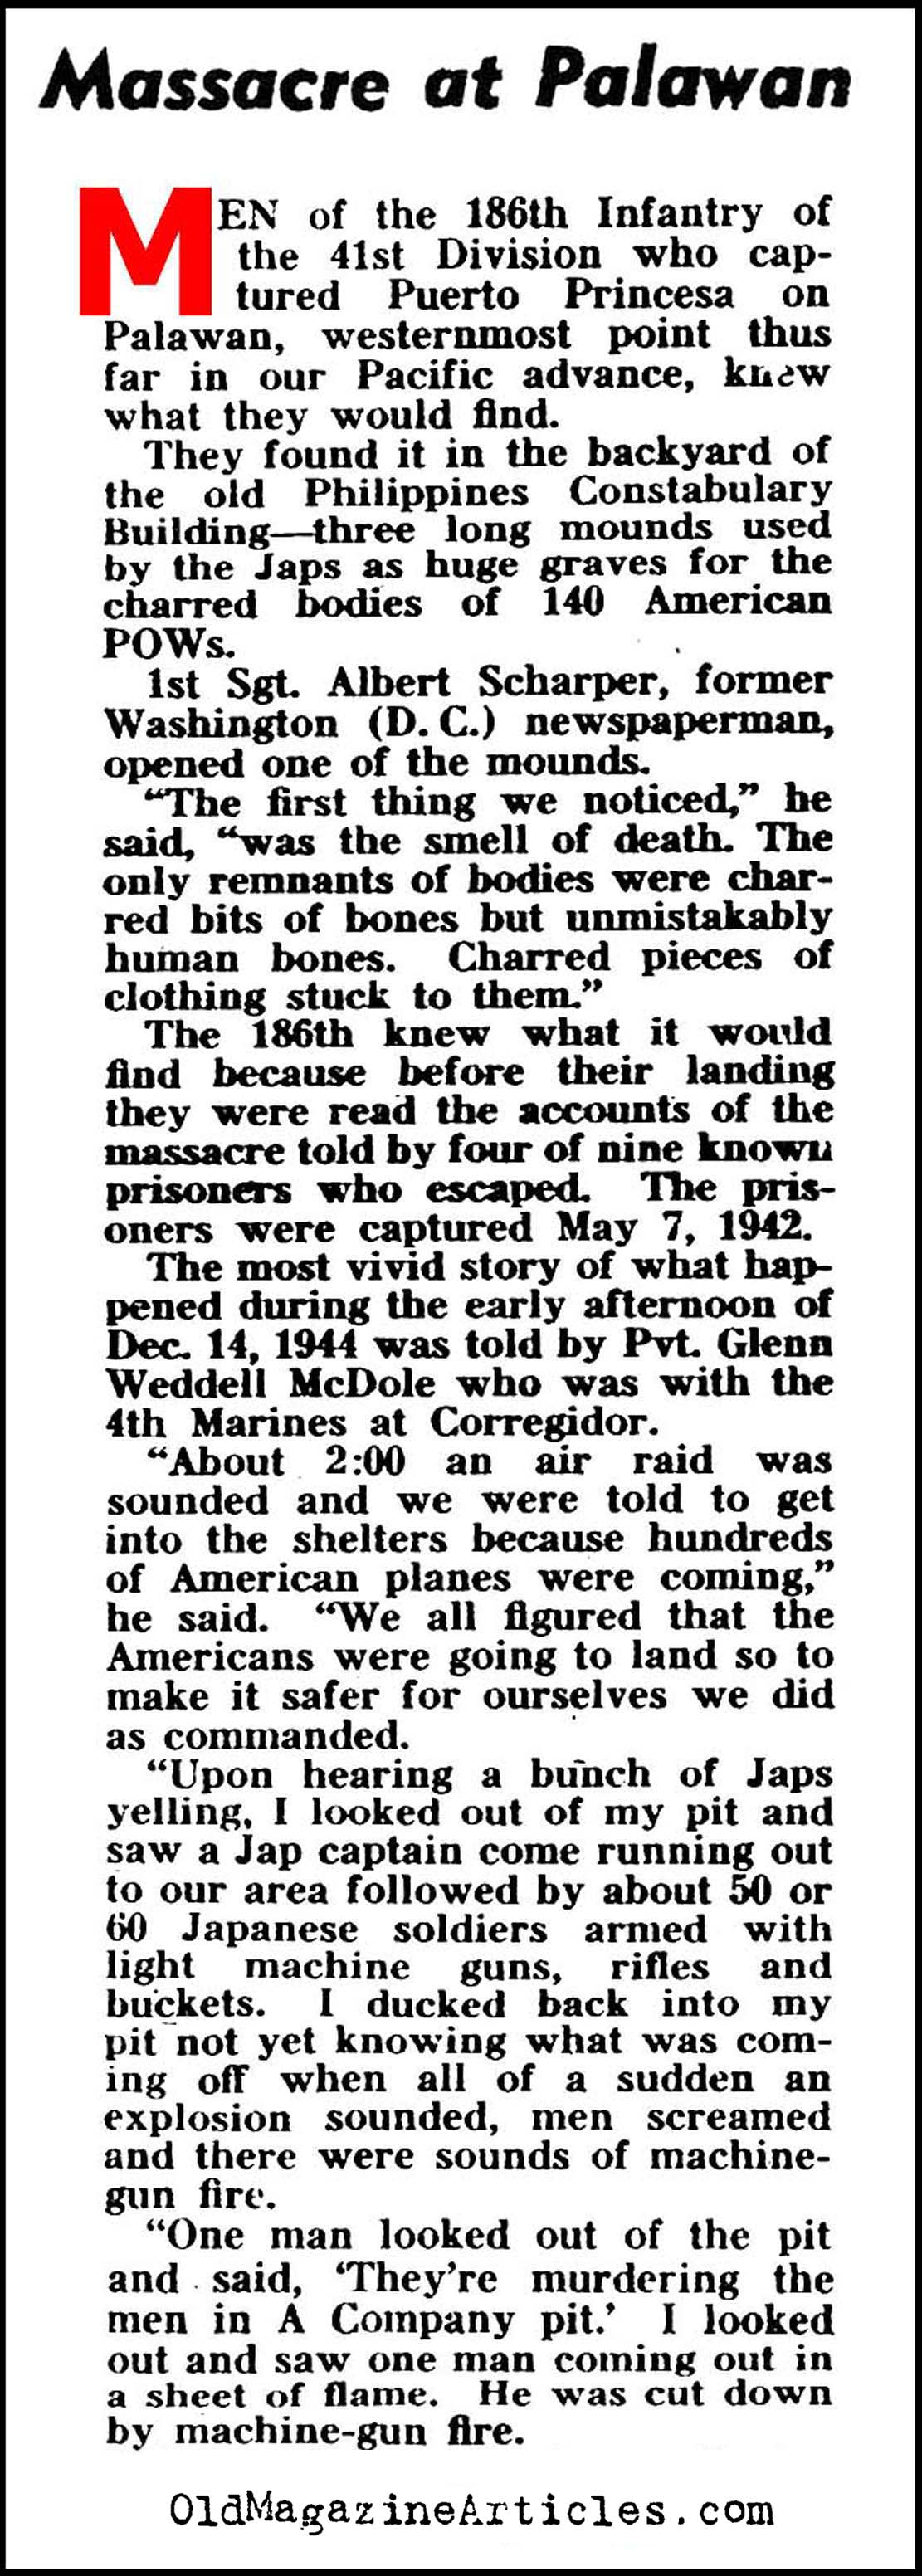 American P.O.W.s Massacred (Yank Magazine, 1945)